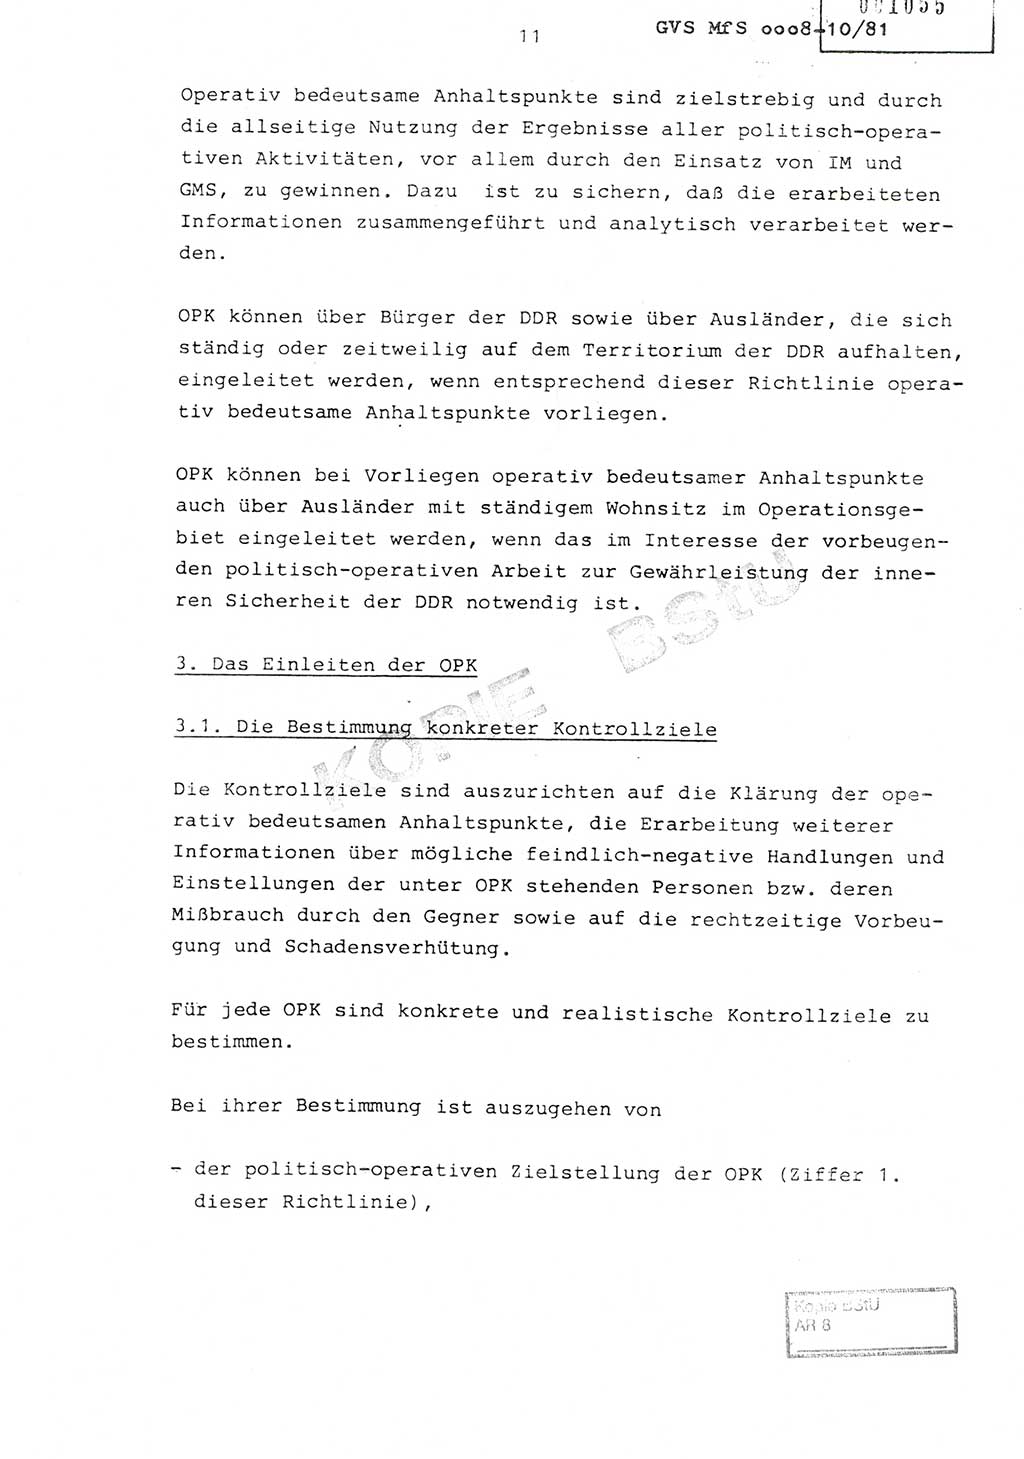 Richtlinie Nr. 1/81 über die operative Personenkontrolle (OPK), Ministerium für Staatssicherheit (MfS) [Deutsche Demokratische Republik (DDR)], Der Minister, Geheime Verschlußsache (GVS) ooo8-10/81, Berlin 1981, Blatt 11 (RL 1/81 OPK DDR MfS Min. GVS ooo8-10/81 1981, Bl. 11)